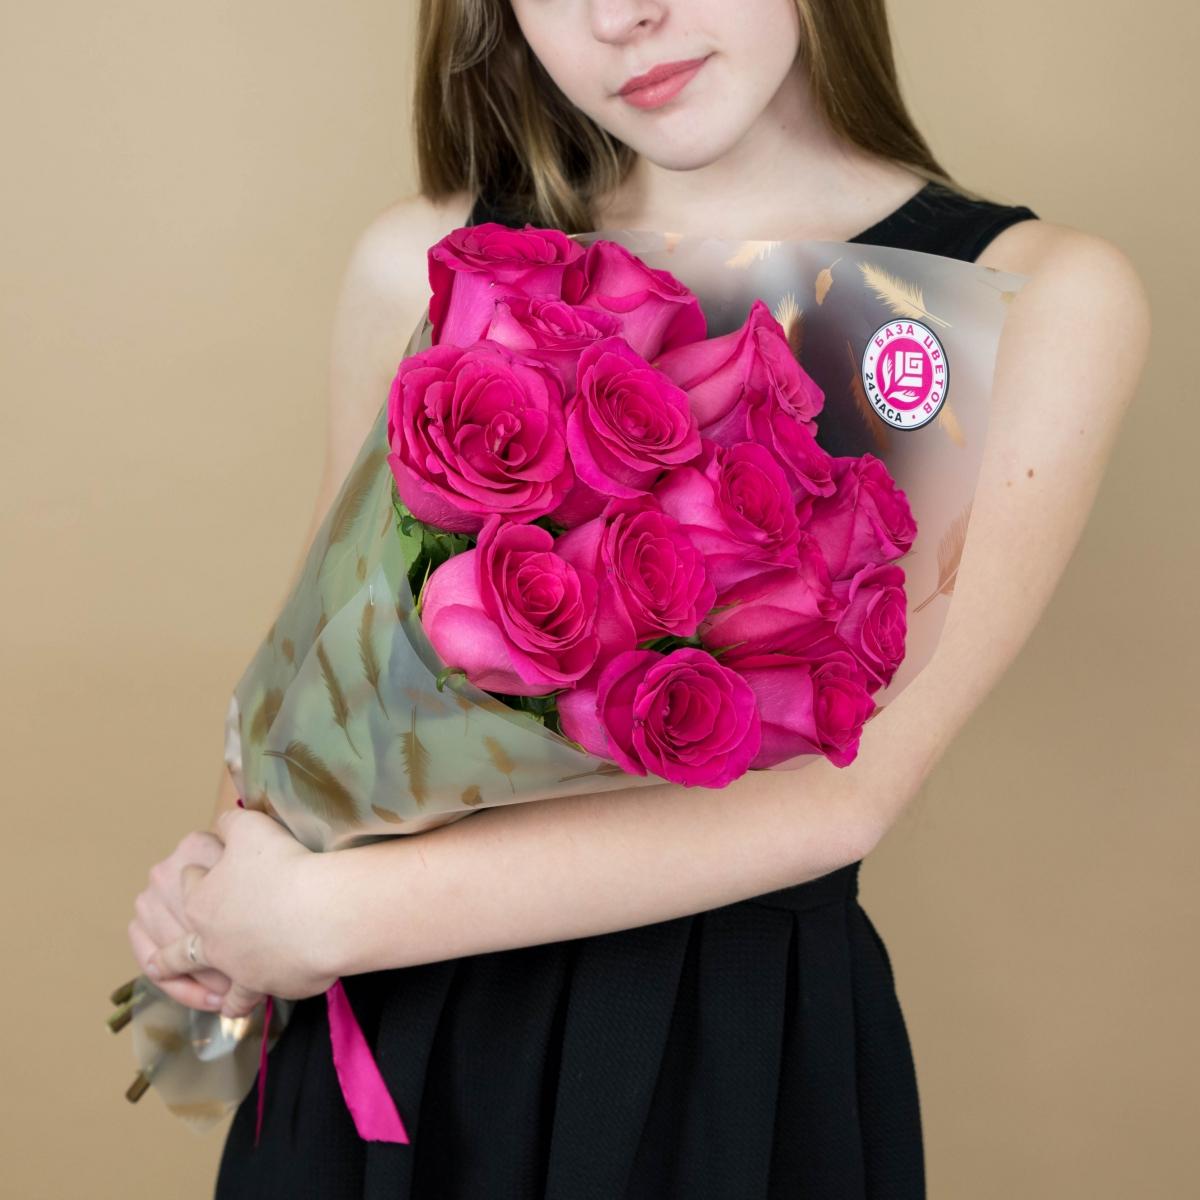 Букет из розовых роз 15 шт 40 см (Эквадор) Артикул: 20368u